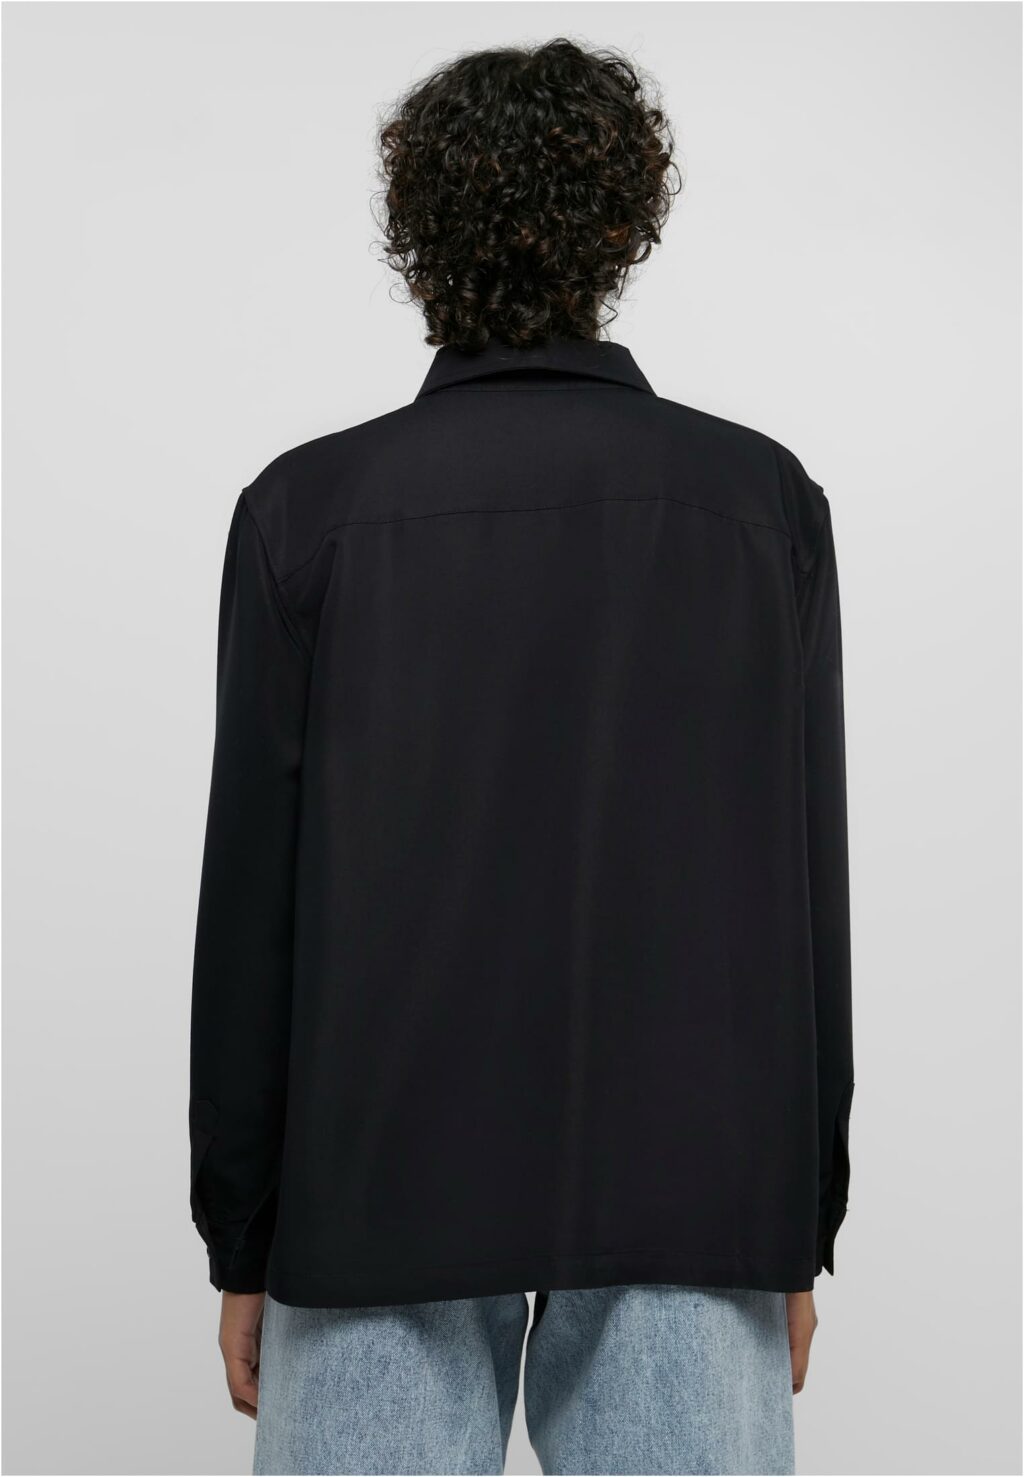 Urban Classics Ladies Oversized Twill Shirt black TB6071